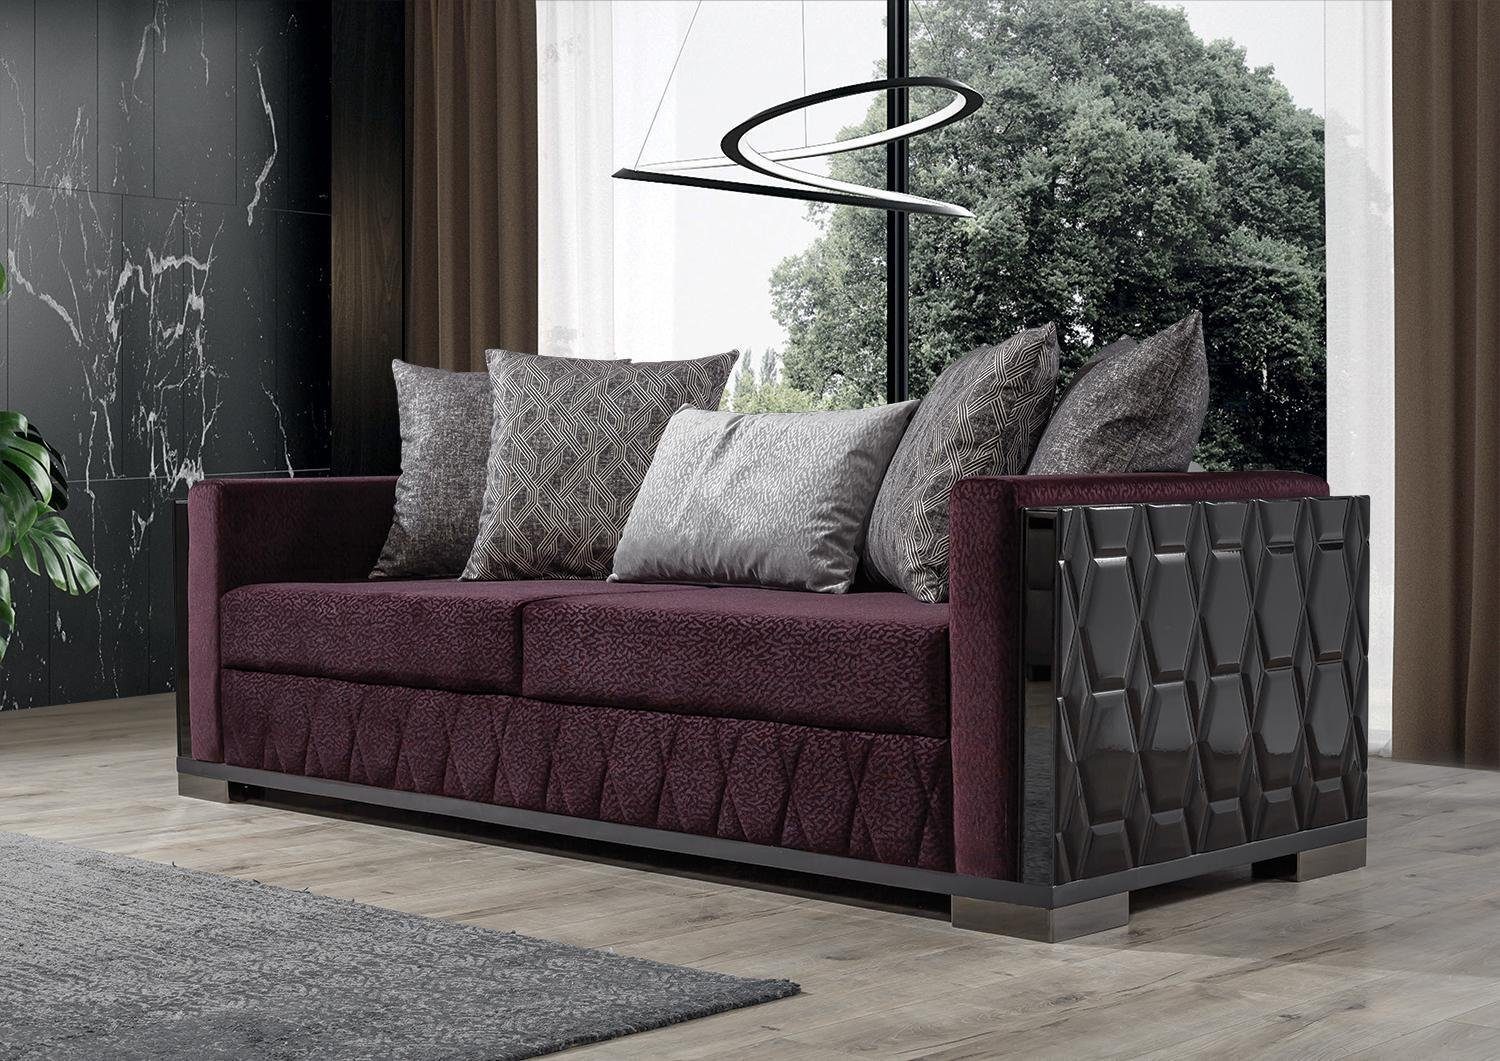 JVmoebel 3-Sitzer Moderne Couch Sofa Burgund Sitz Design Sitzer Sofas Sofa Dreisitzer 3